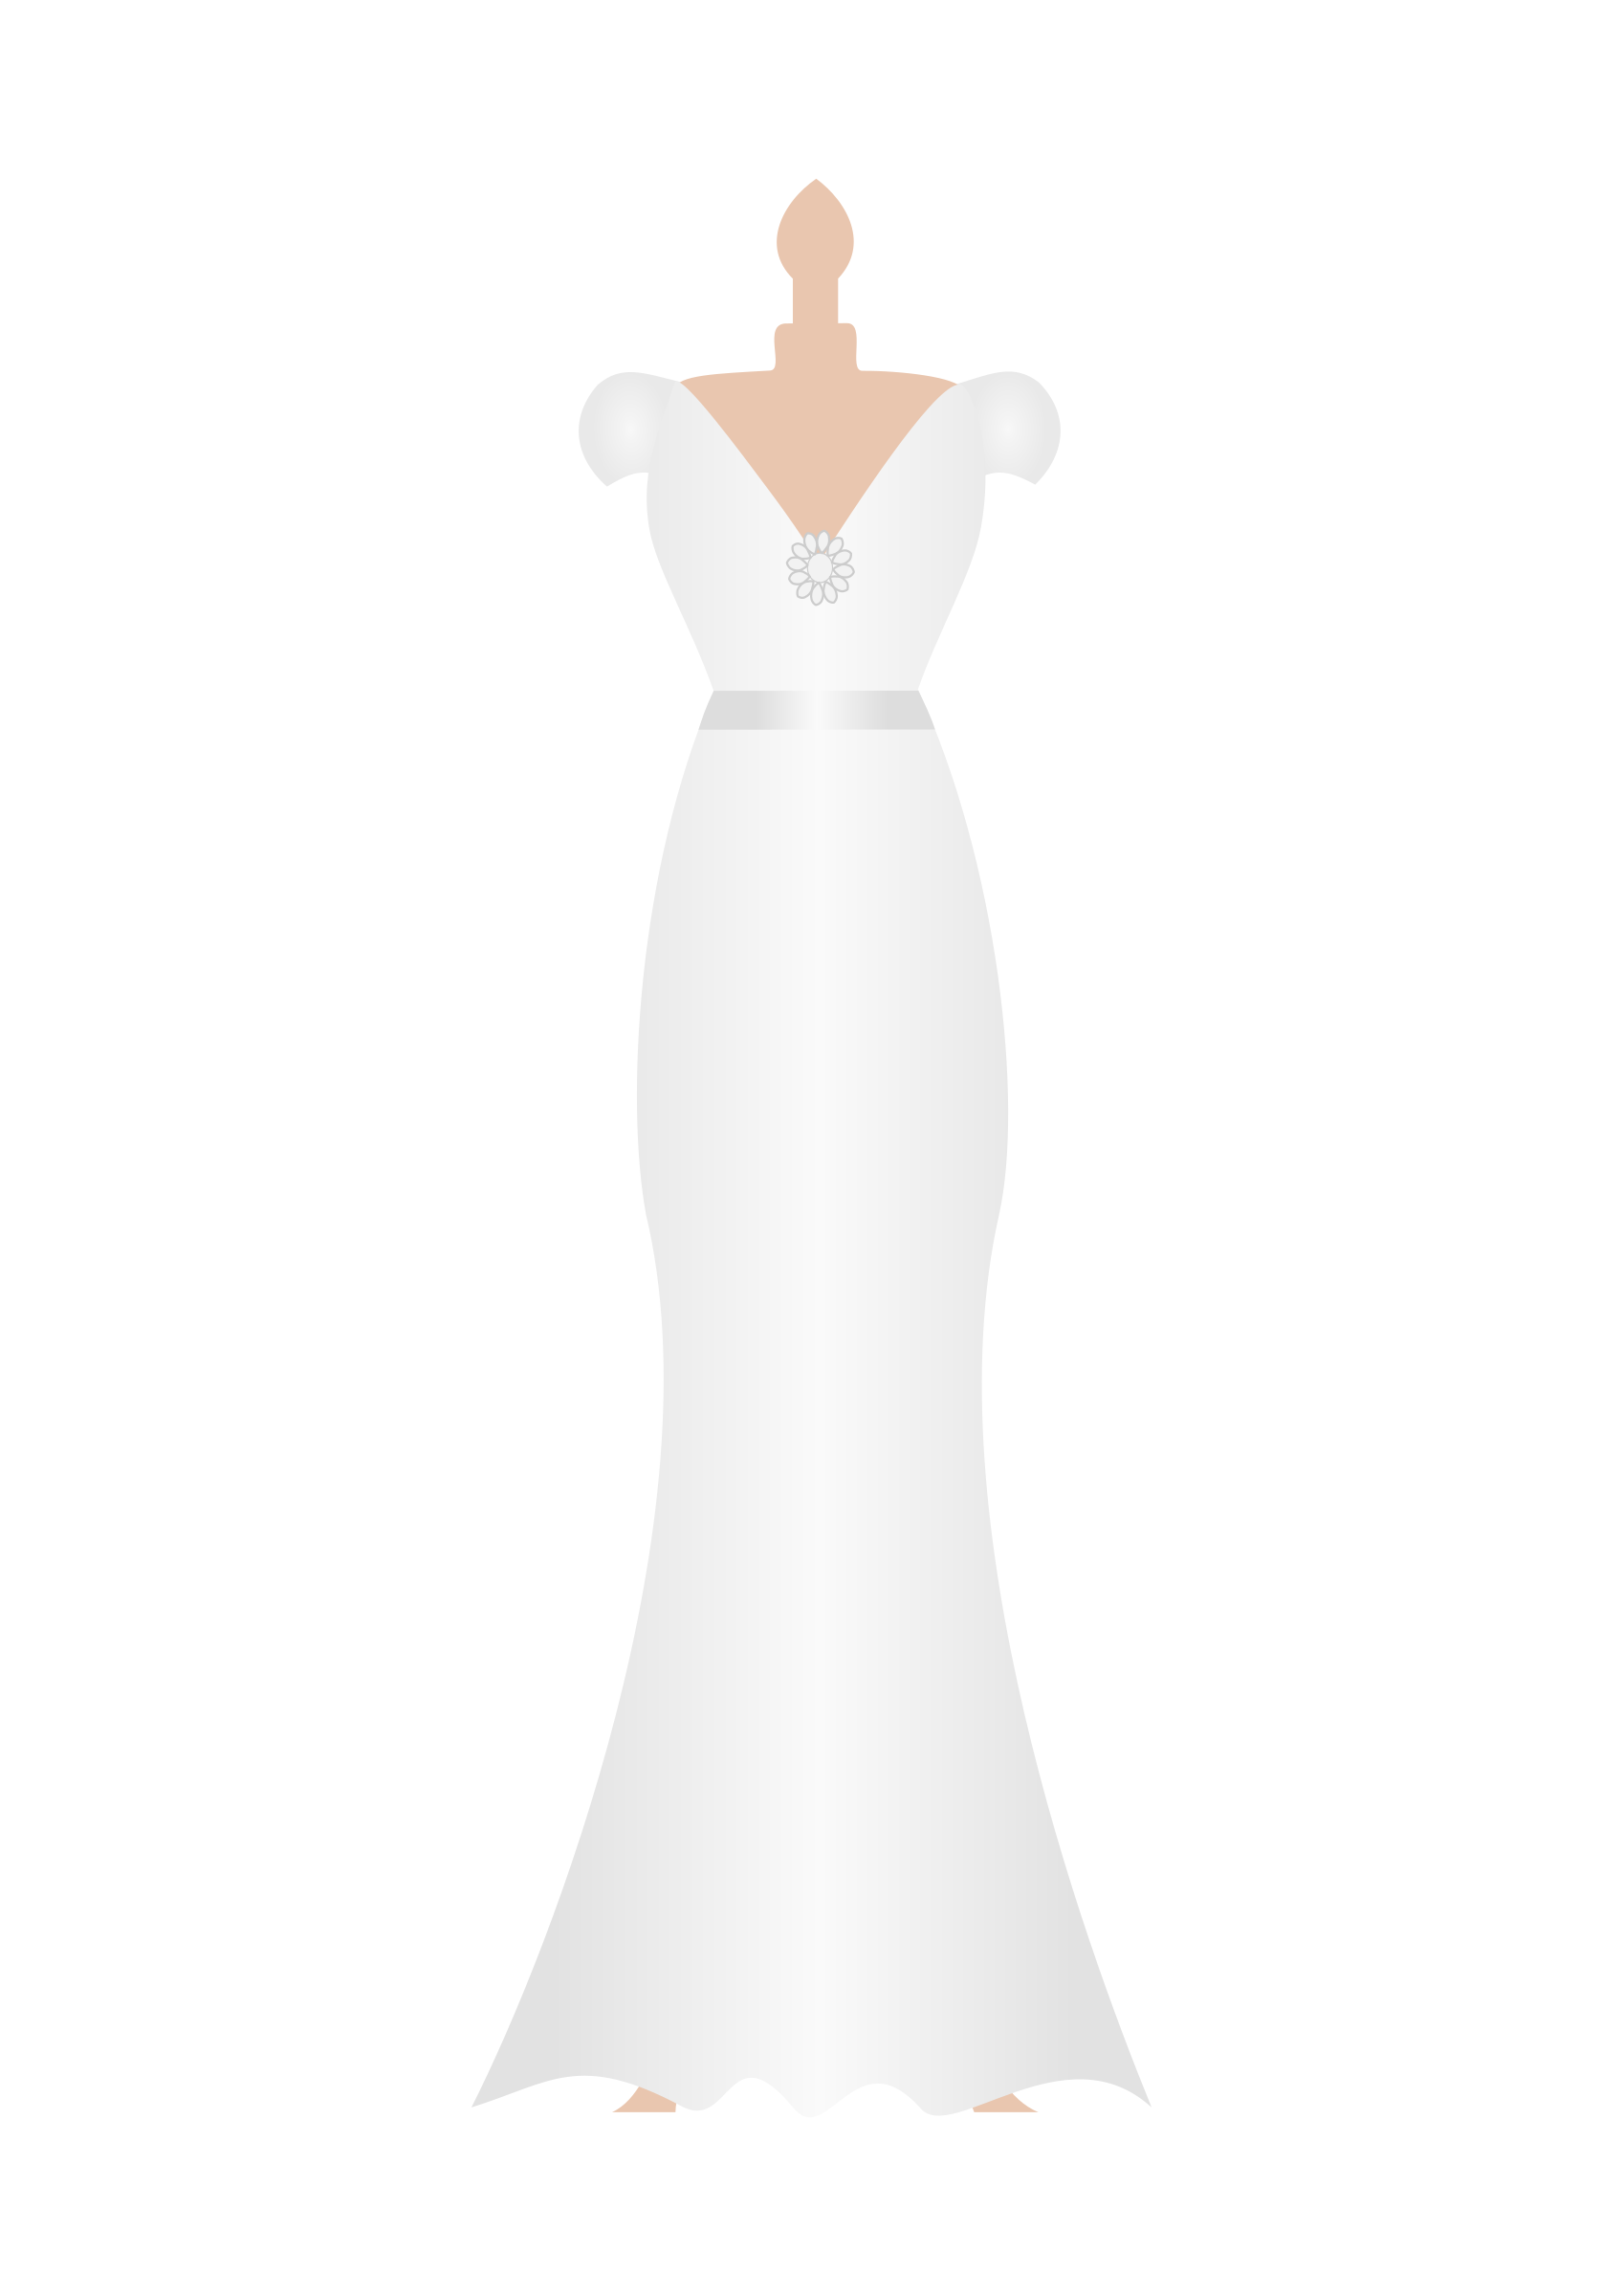 Little black dress Wedding dress Clip art - dress png download - 456* ...